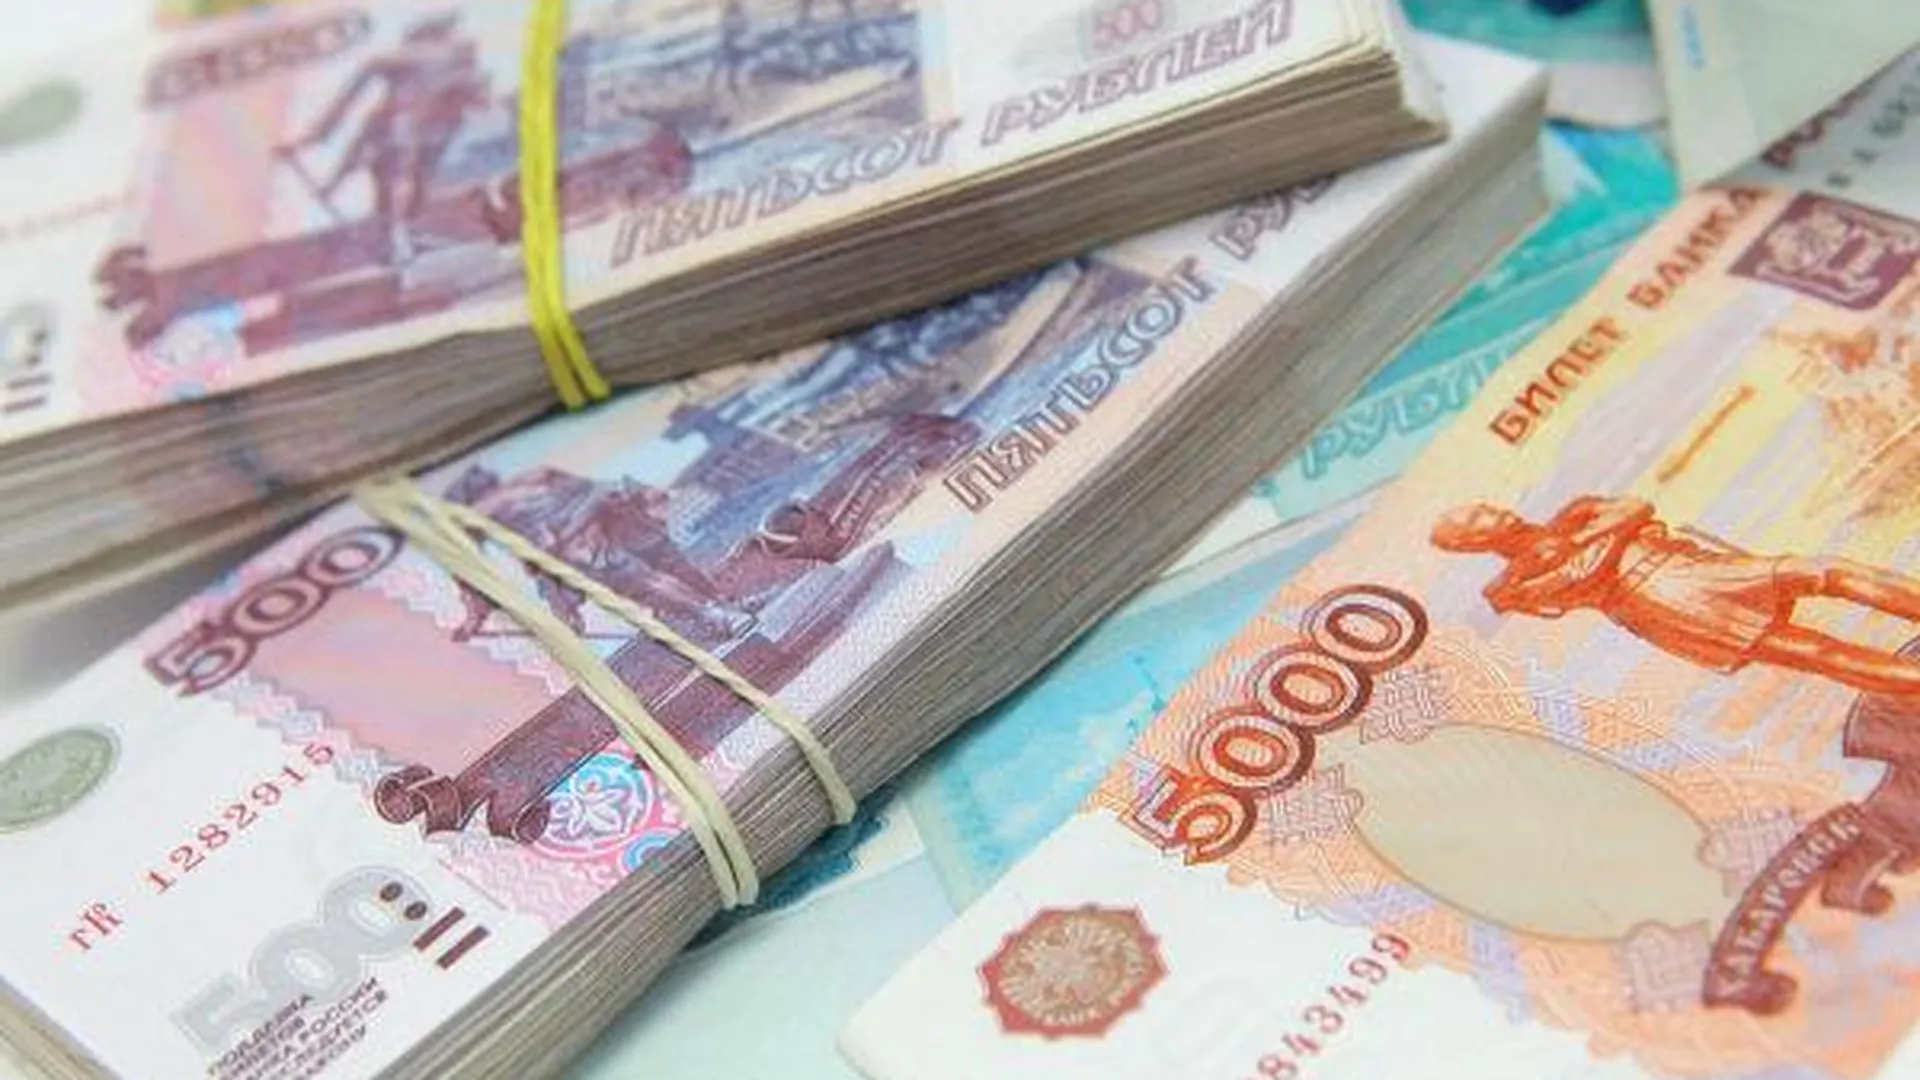 Почти 2,5 млн руб вынесли грабители из сейфа директора школы в Раменском